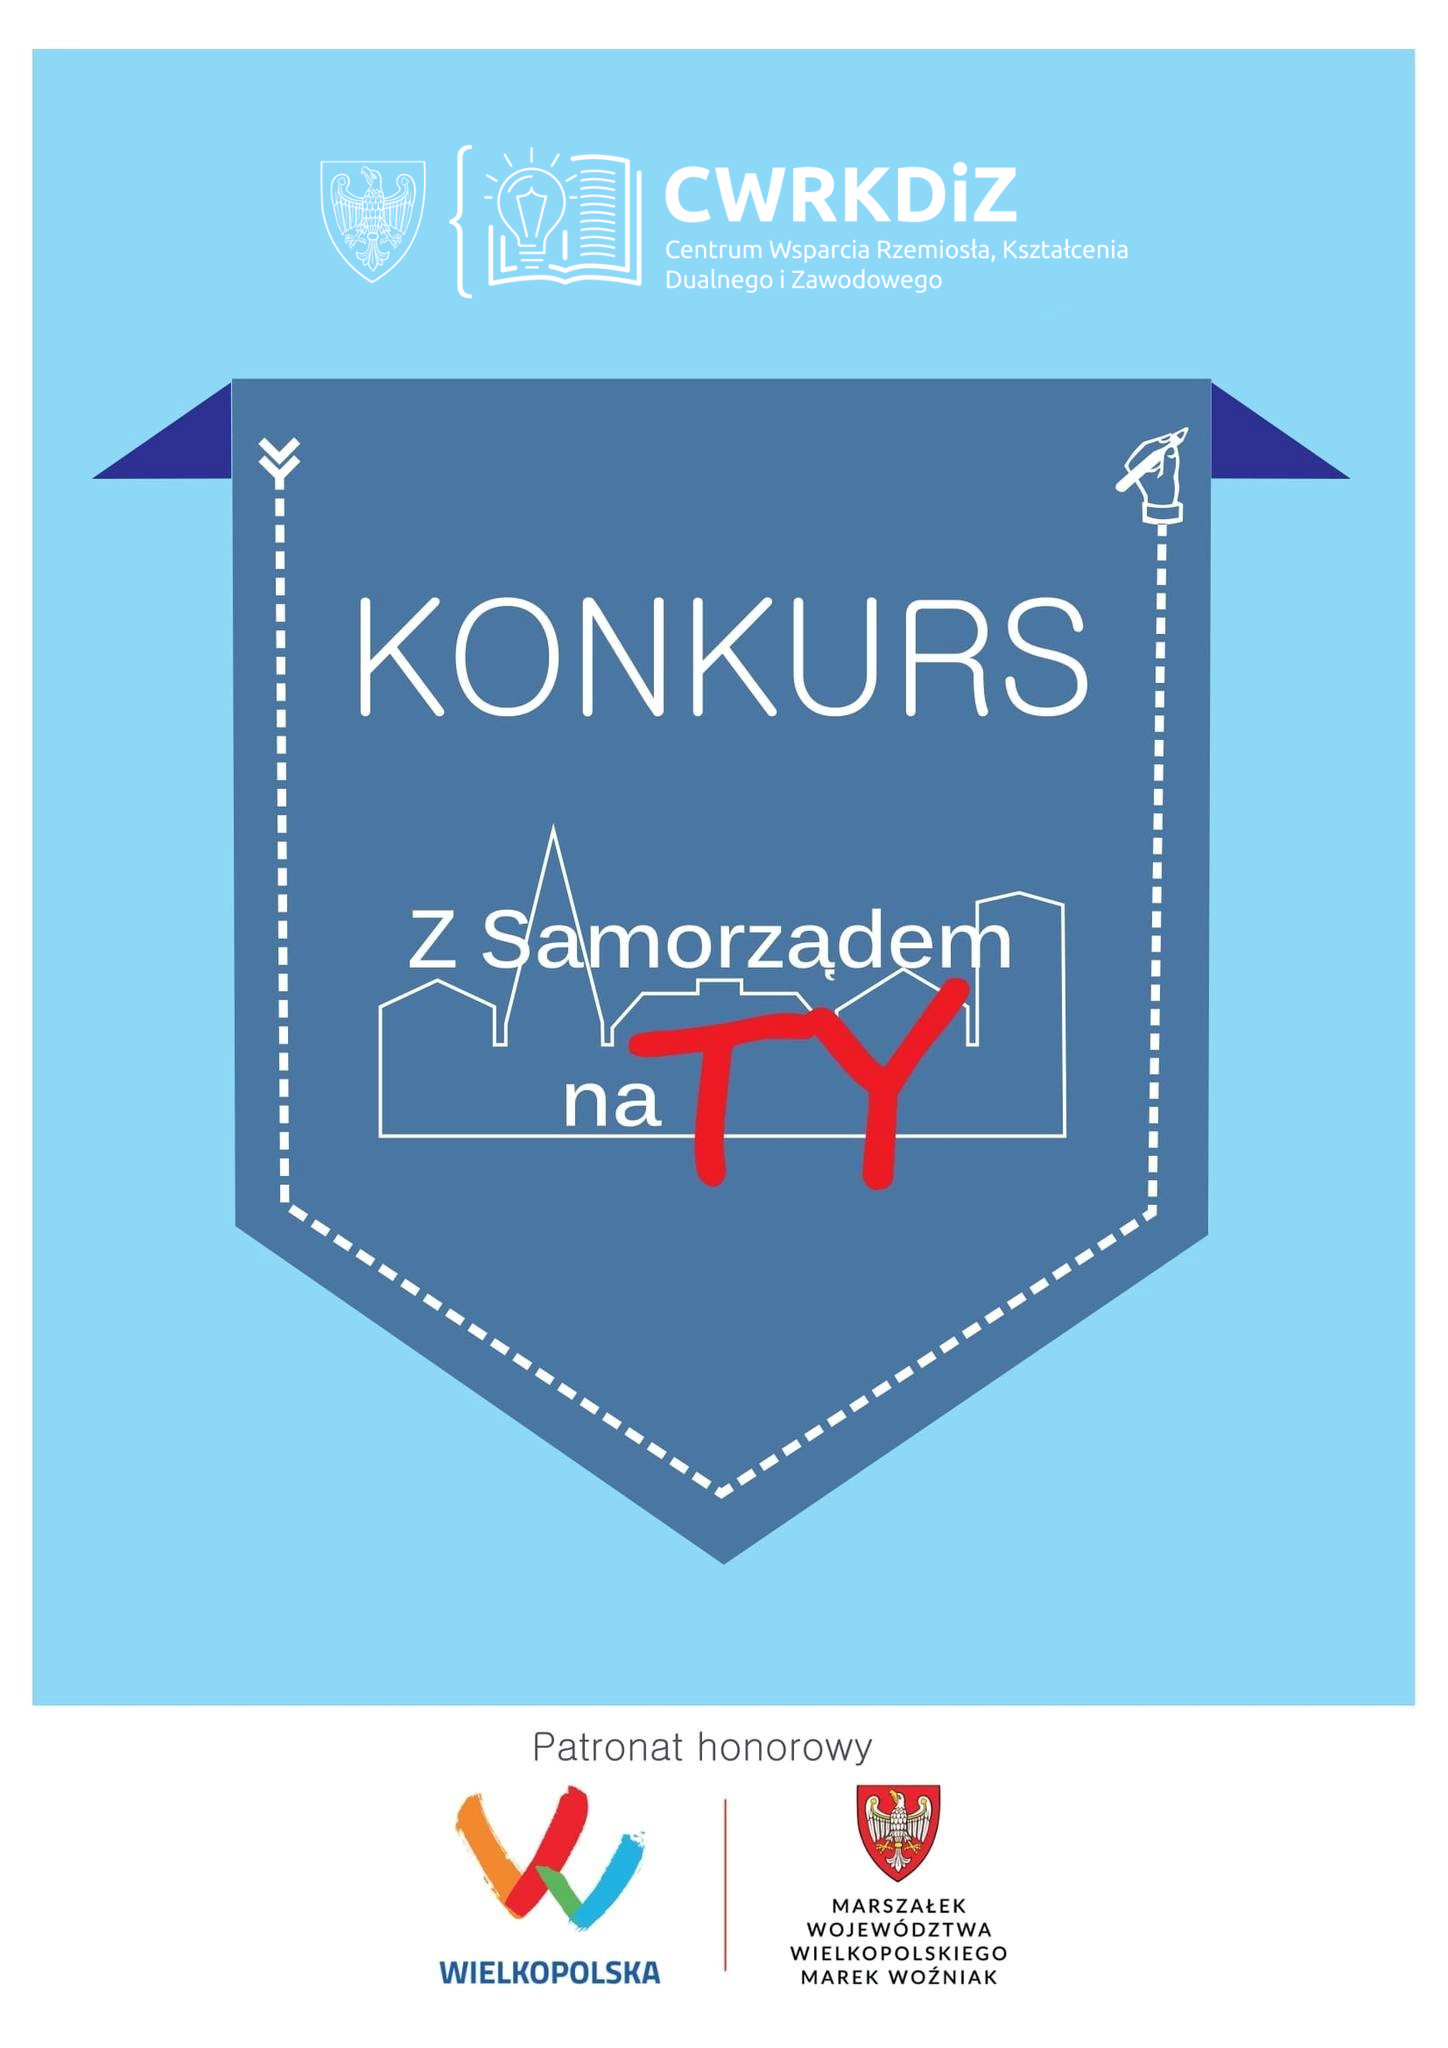 U góry znajduje się logotyp CWRKDiZ, na dole natomiast logotyp Wielkopolski i Marszałka Województwa Wielkopolskiego. Na środku na niebieskim tle widnieje nazwa konkursu.